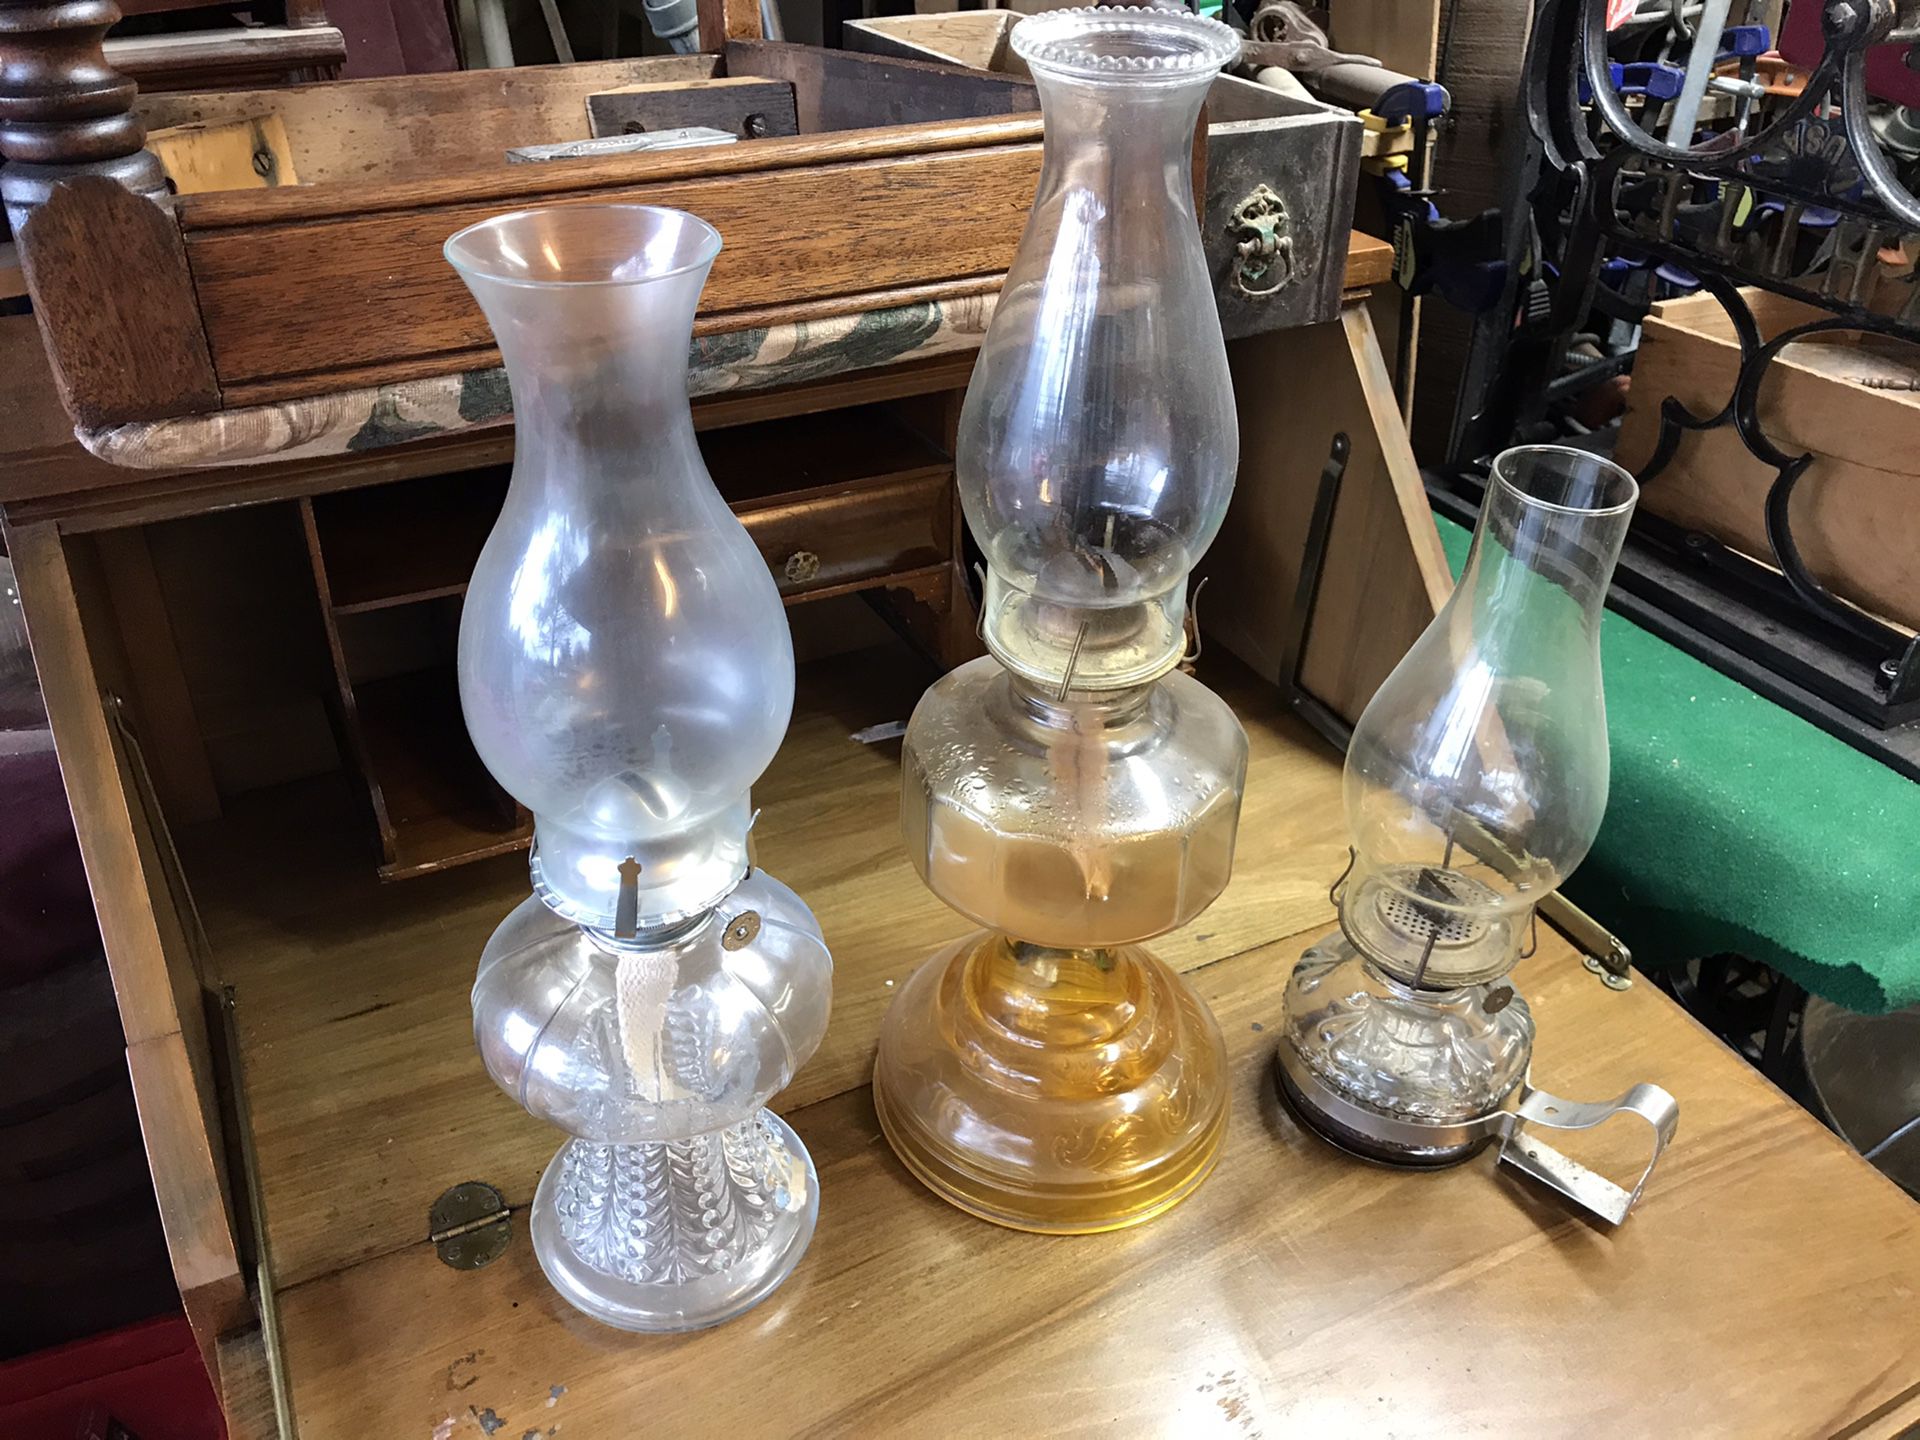 Antique oil lamps ($20 each)